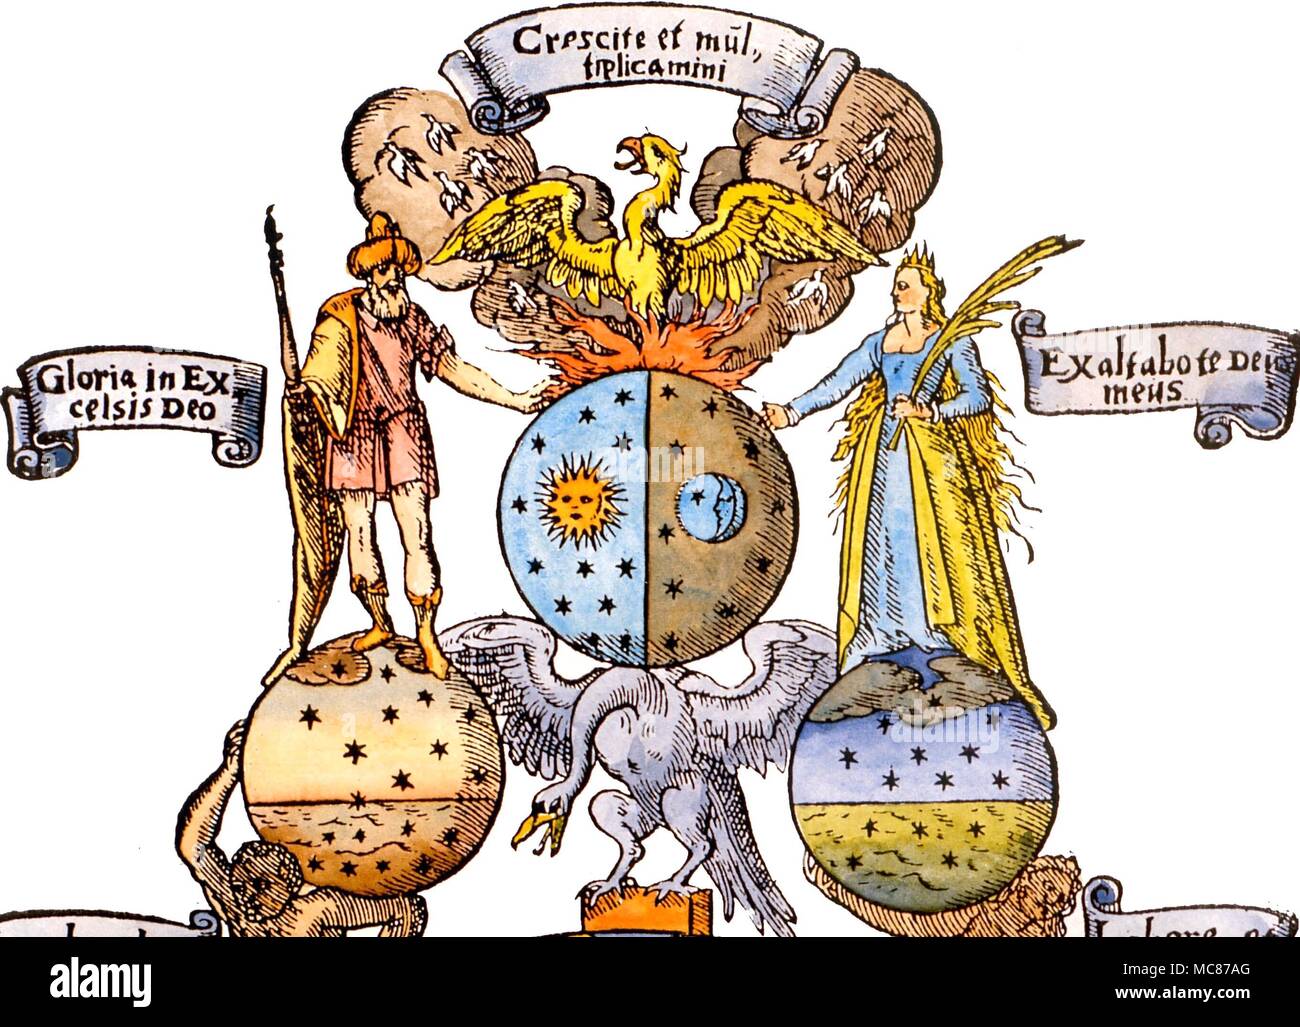 Détail de l'énergie solaire et lunaire, les chiffres avec le phénix des flammes. Les jeunes de la Phoenix, s'envoler dans les nuages, est une image alchimique de la pierre philosophale. D'Andreas Libavius' 'Alchymia', 1606 Banque D'Images